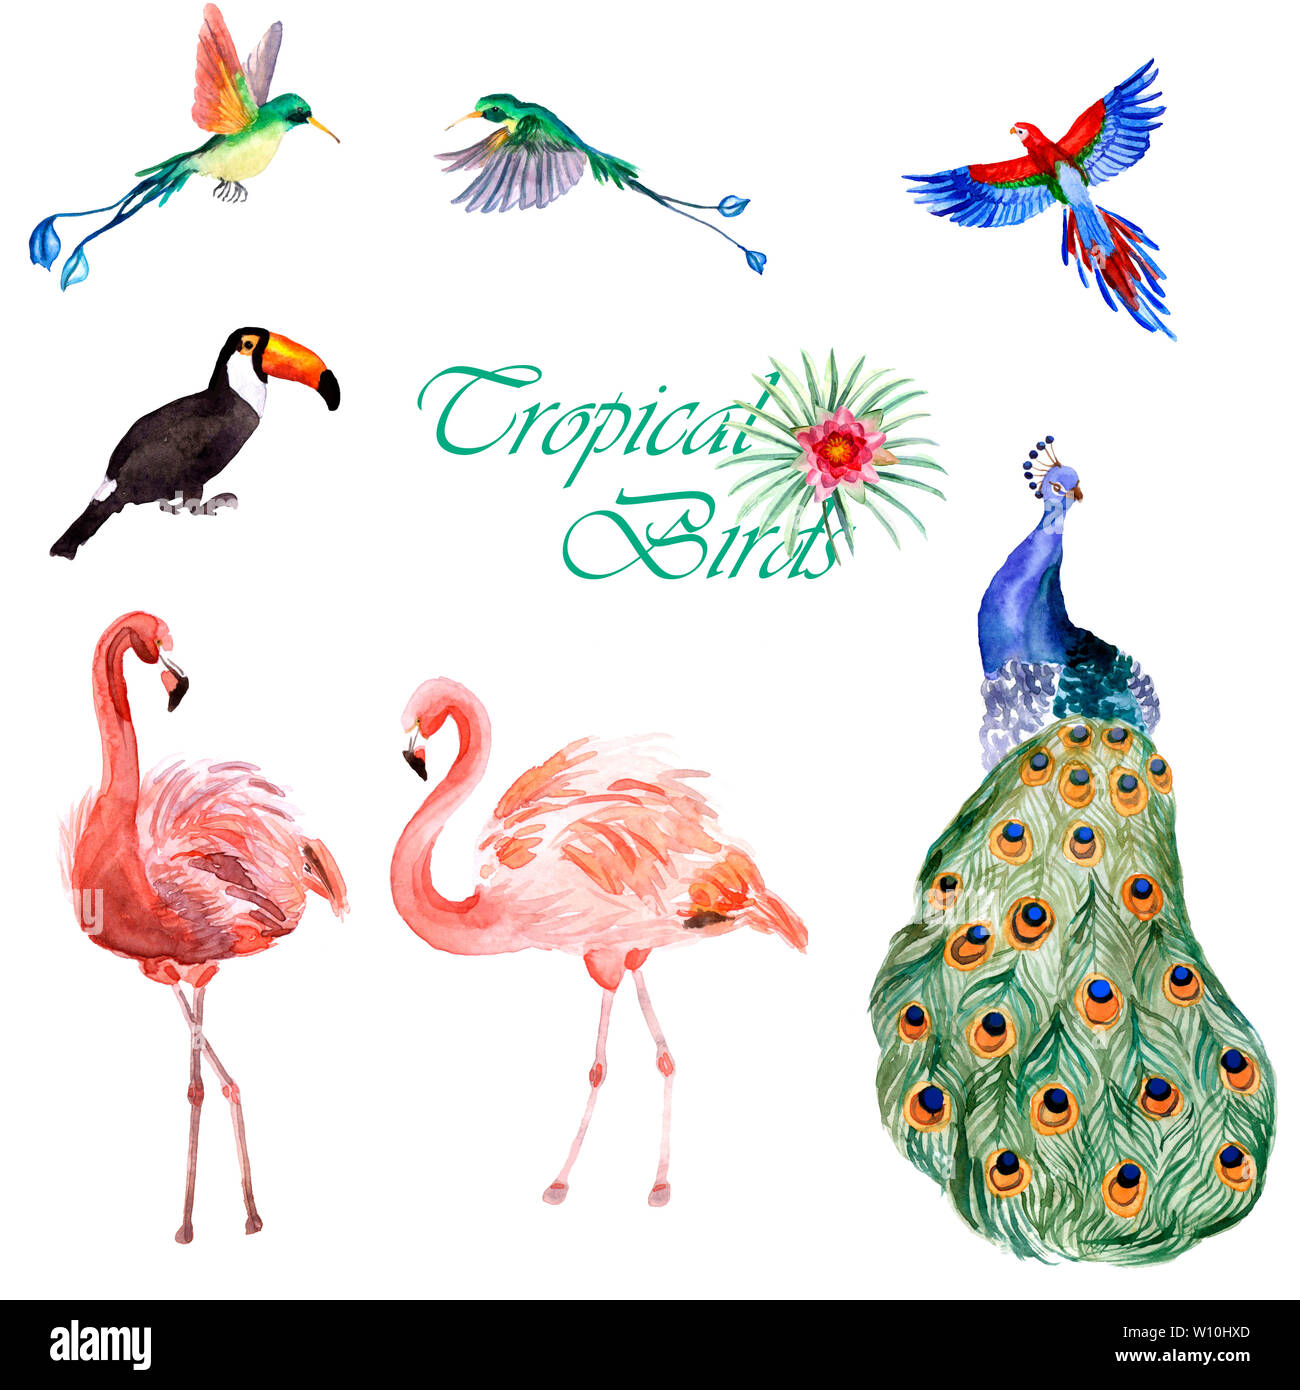 Aquarelle collection peinte à la main d'oiseaux tropicaux isolé sur fond blanc Banque D'Images